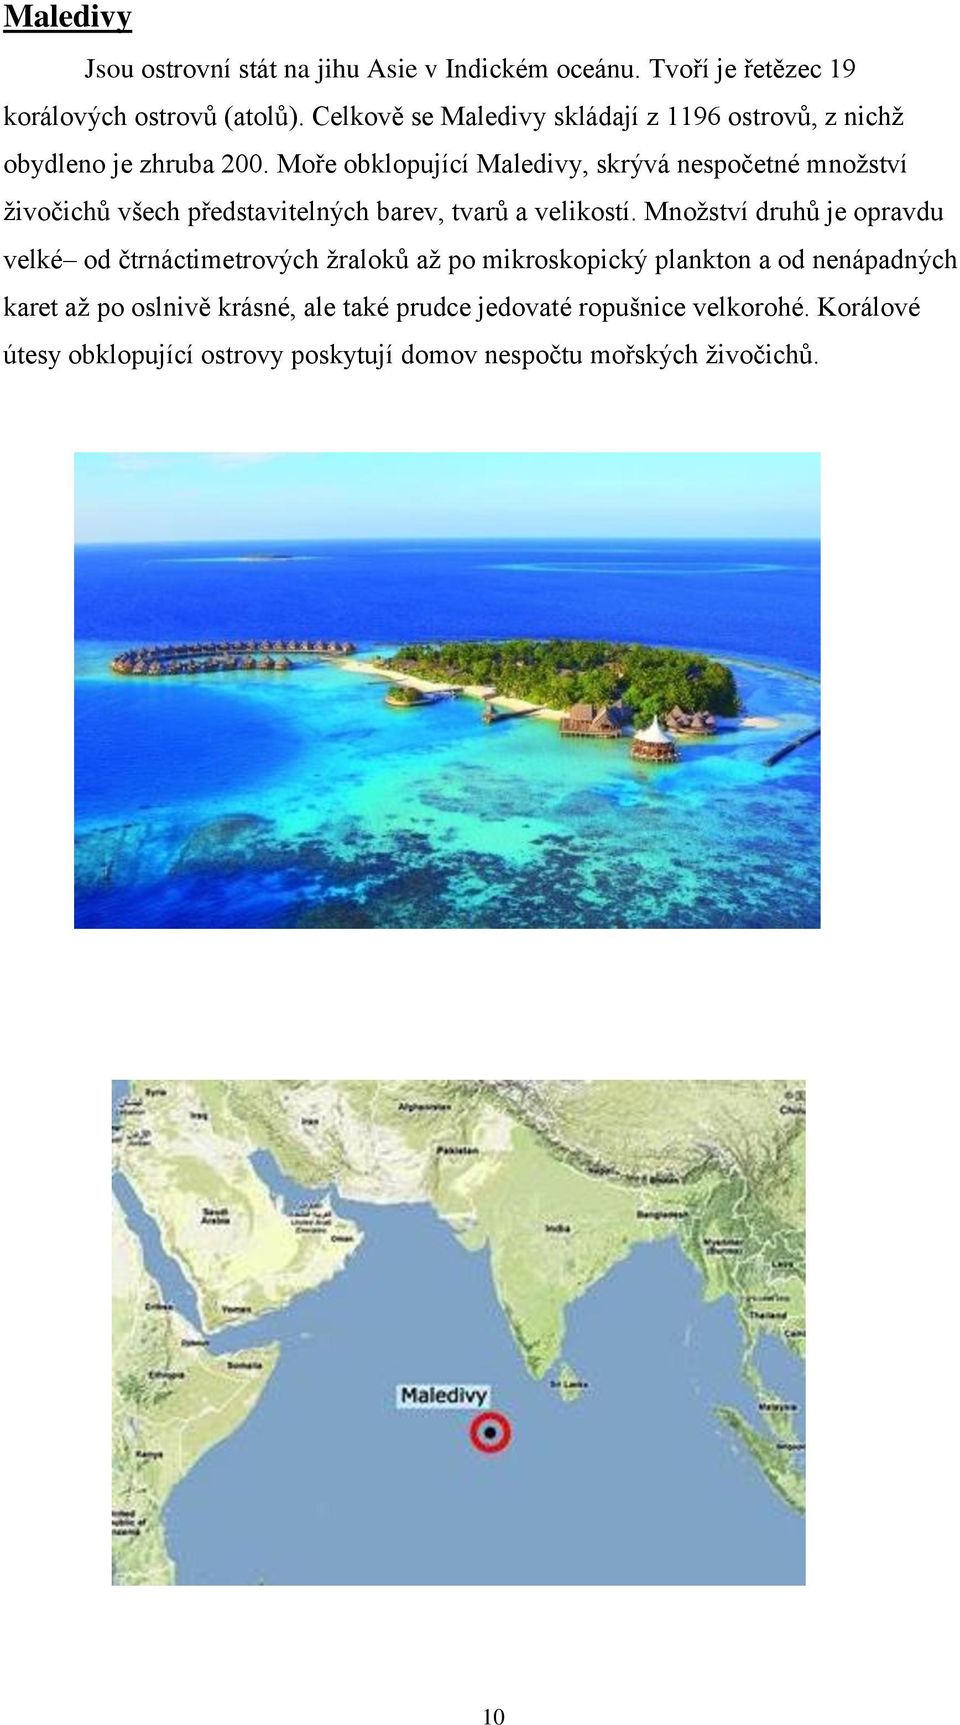 Moře obklopující Maledivy, skrývá nespočetné množství živočichů všech představitelných barev, tvarů a velikostí.